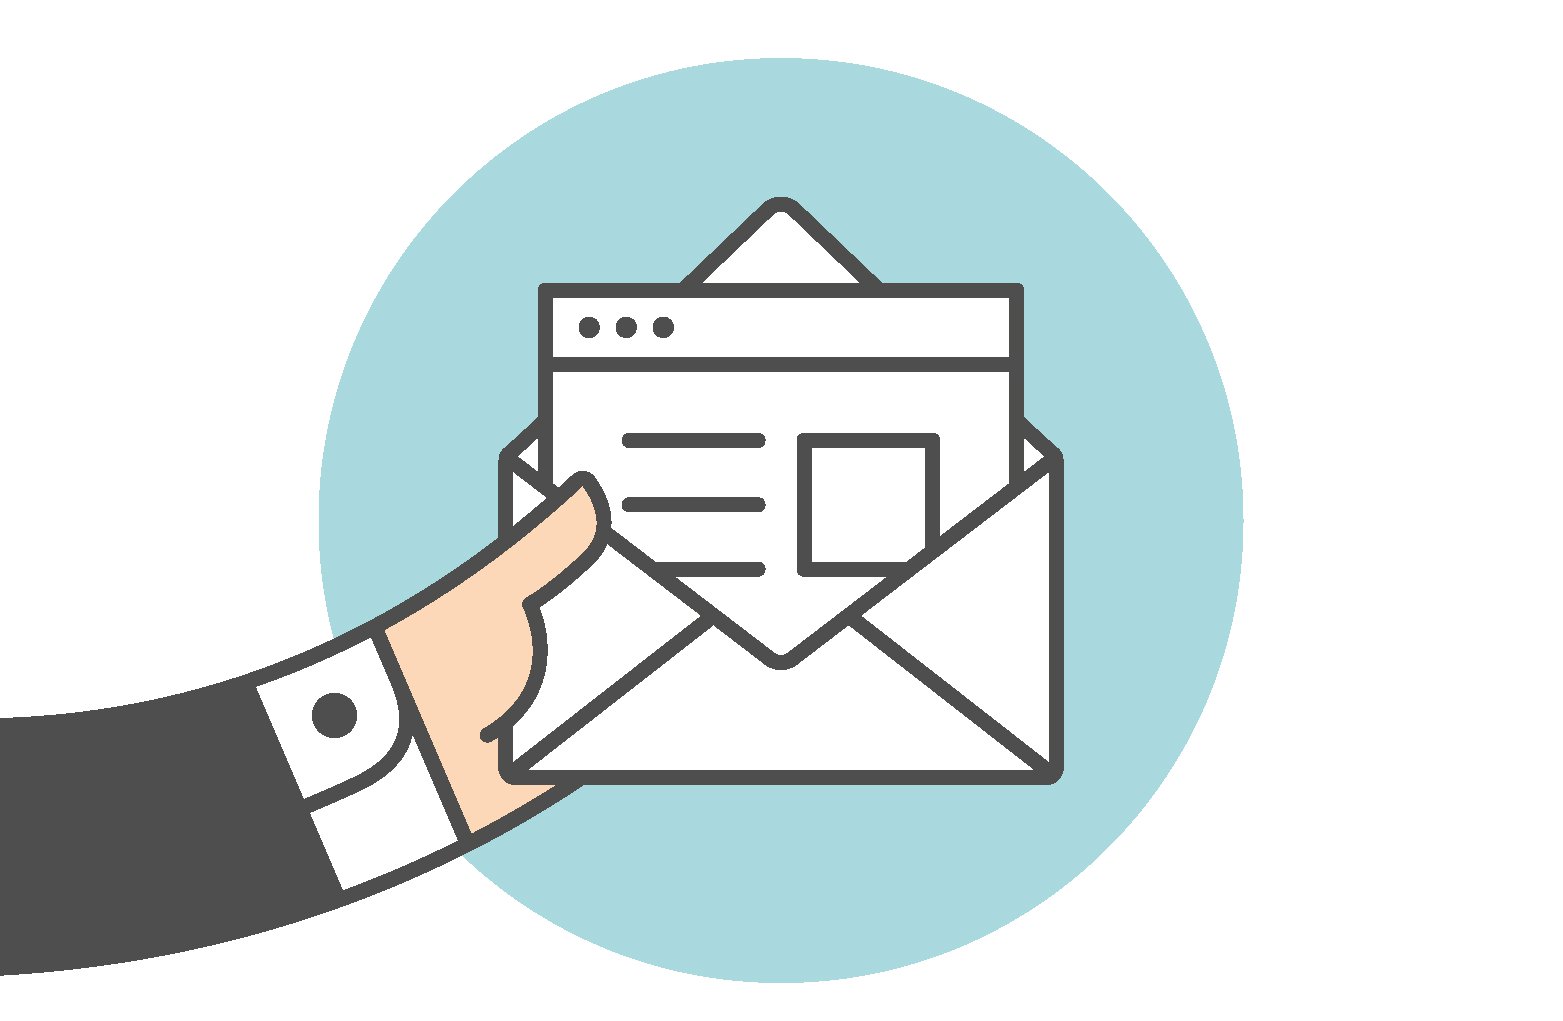 Tips para enviar emails que generen resultados para tu empresa - contenido